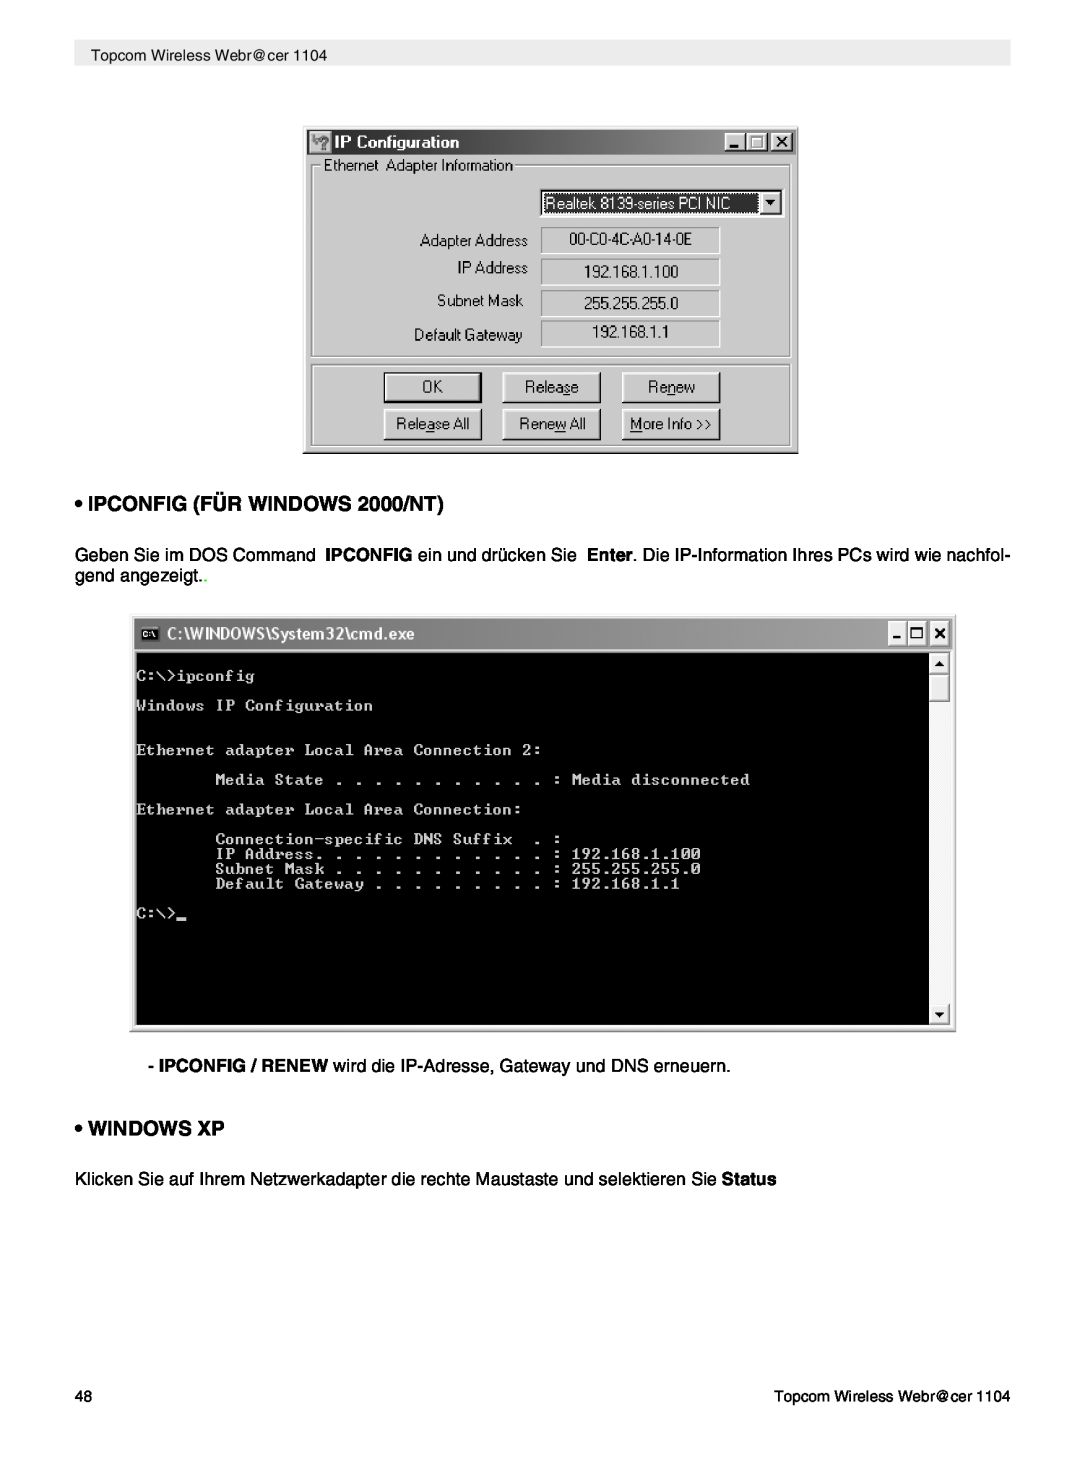 Topcom 1104 manual do utilizador IPCONFIG / RENEW wird die IP-Adresse, Gateway und DNS erneuern 